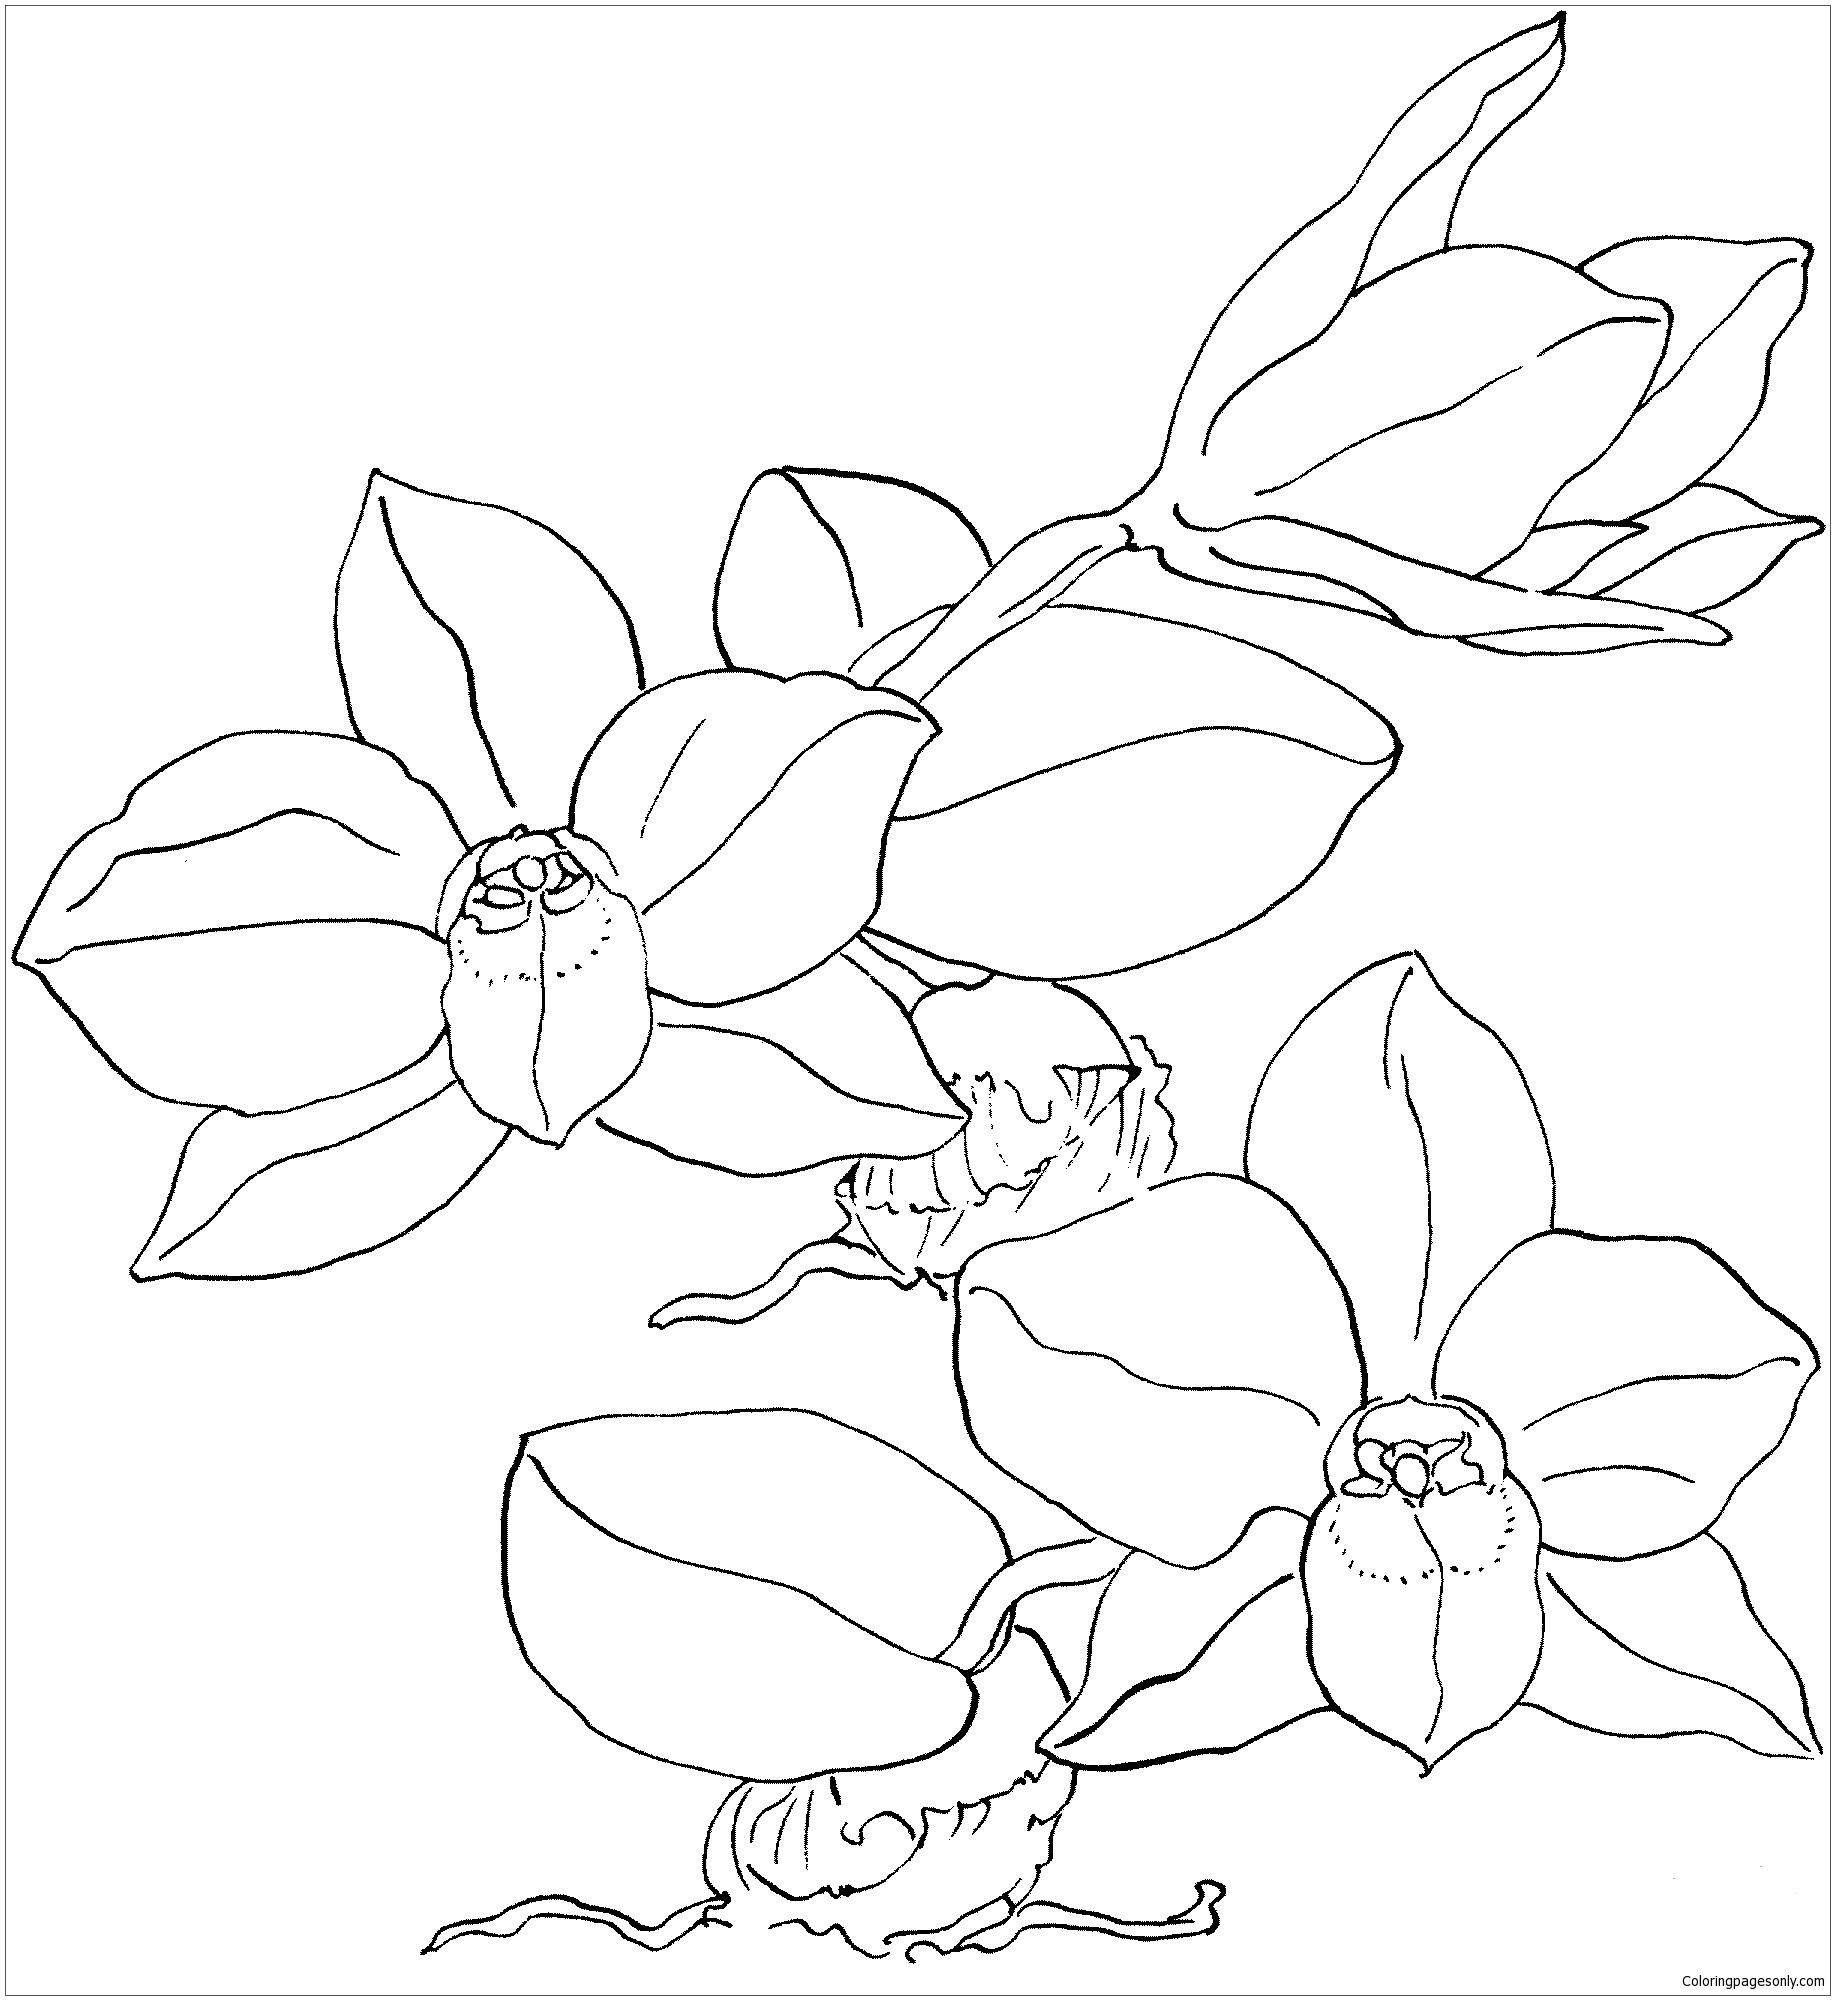 Página para colorir orquídea Sophronitis Cernua